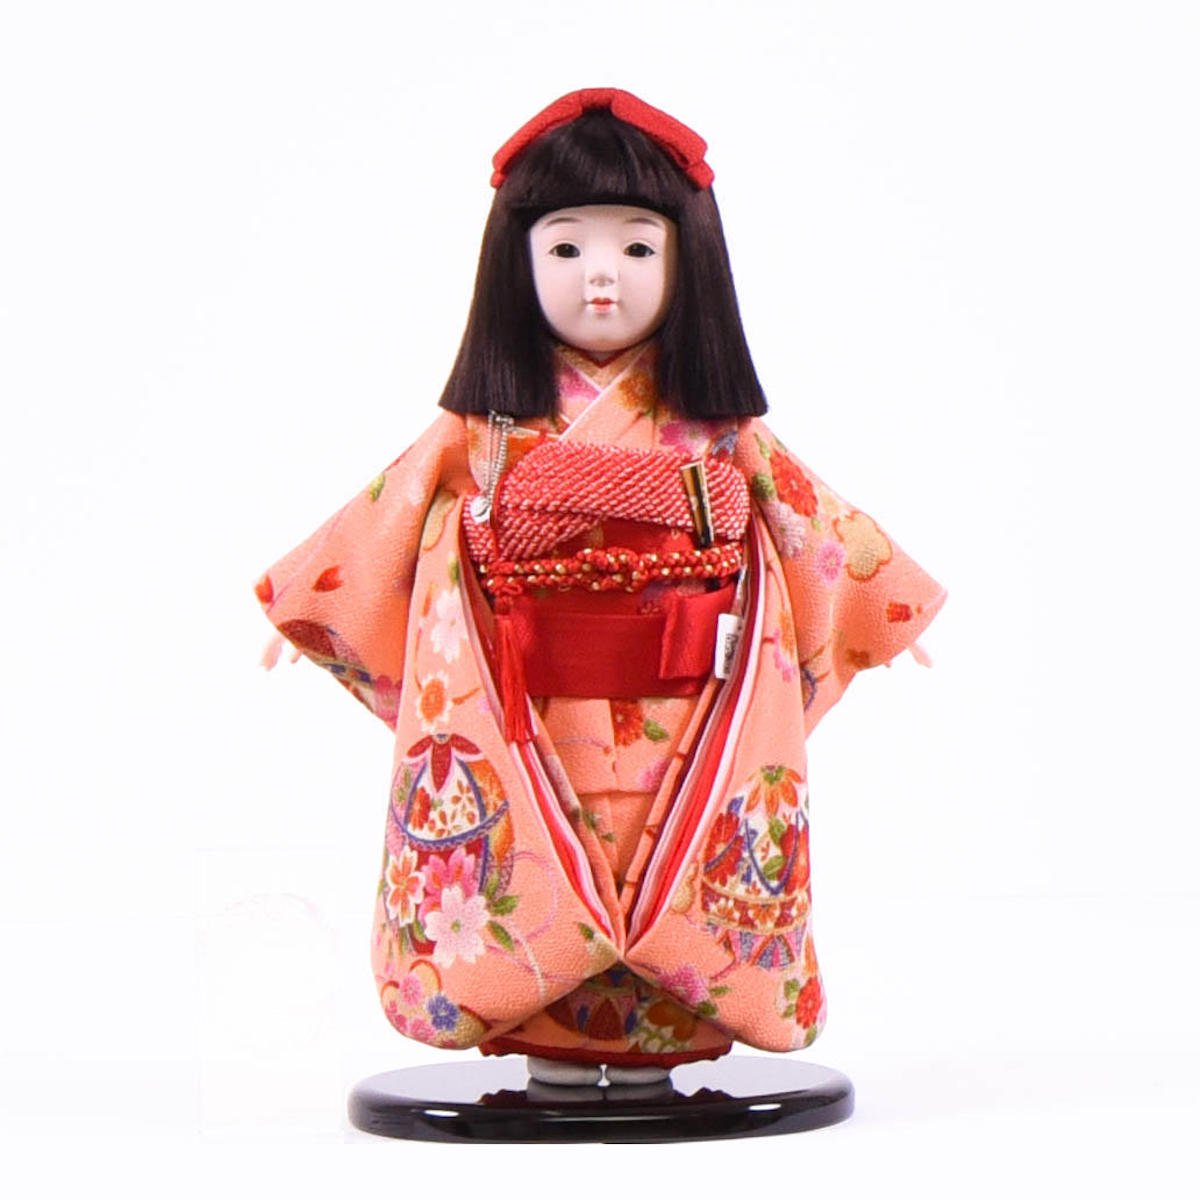 並行輸入品] Nagomi shopひな人形 市松人形 市松人形10号市松人形 金彩桜刺繍衣装 敏光作 ケース入 木目込市松人形 浮世人形 